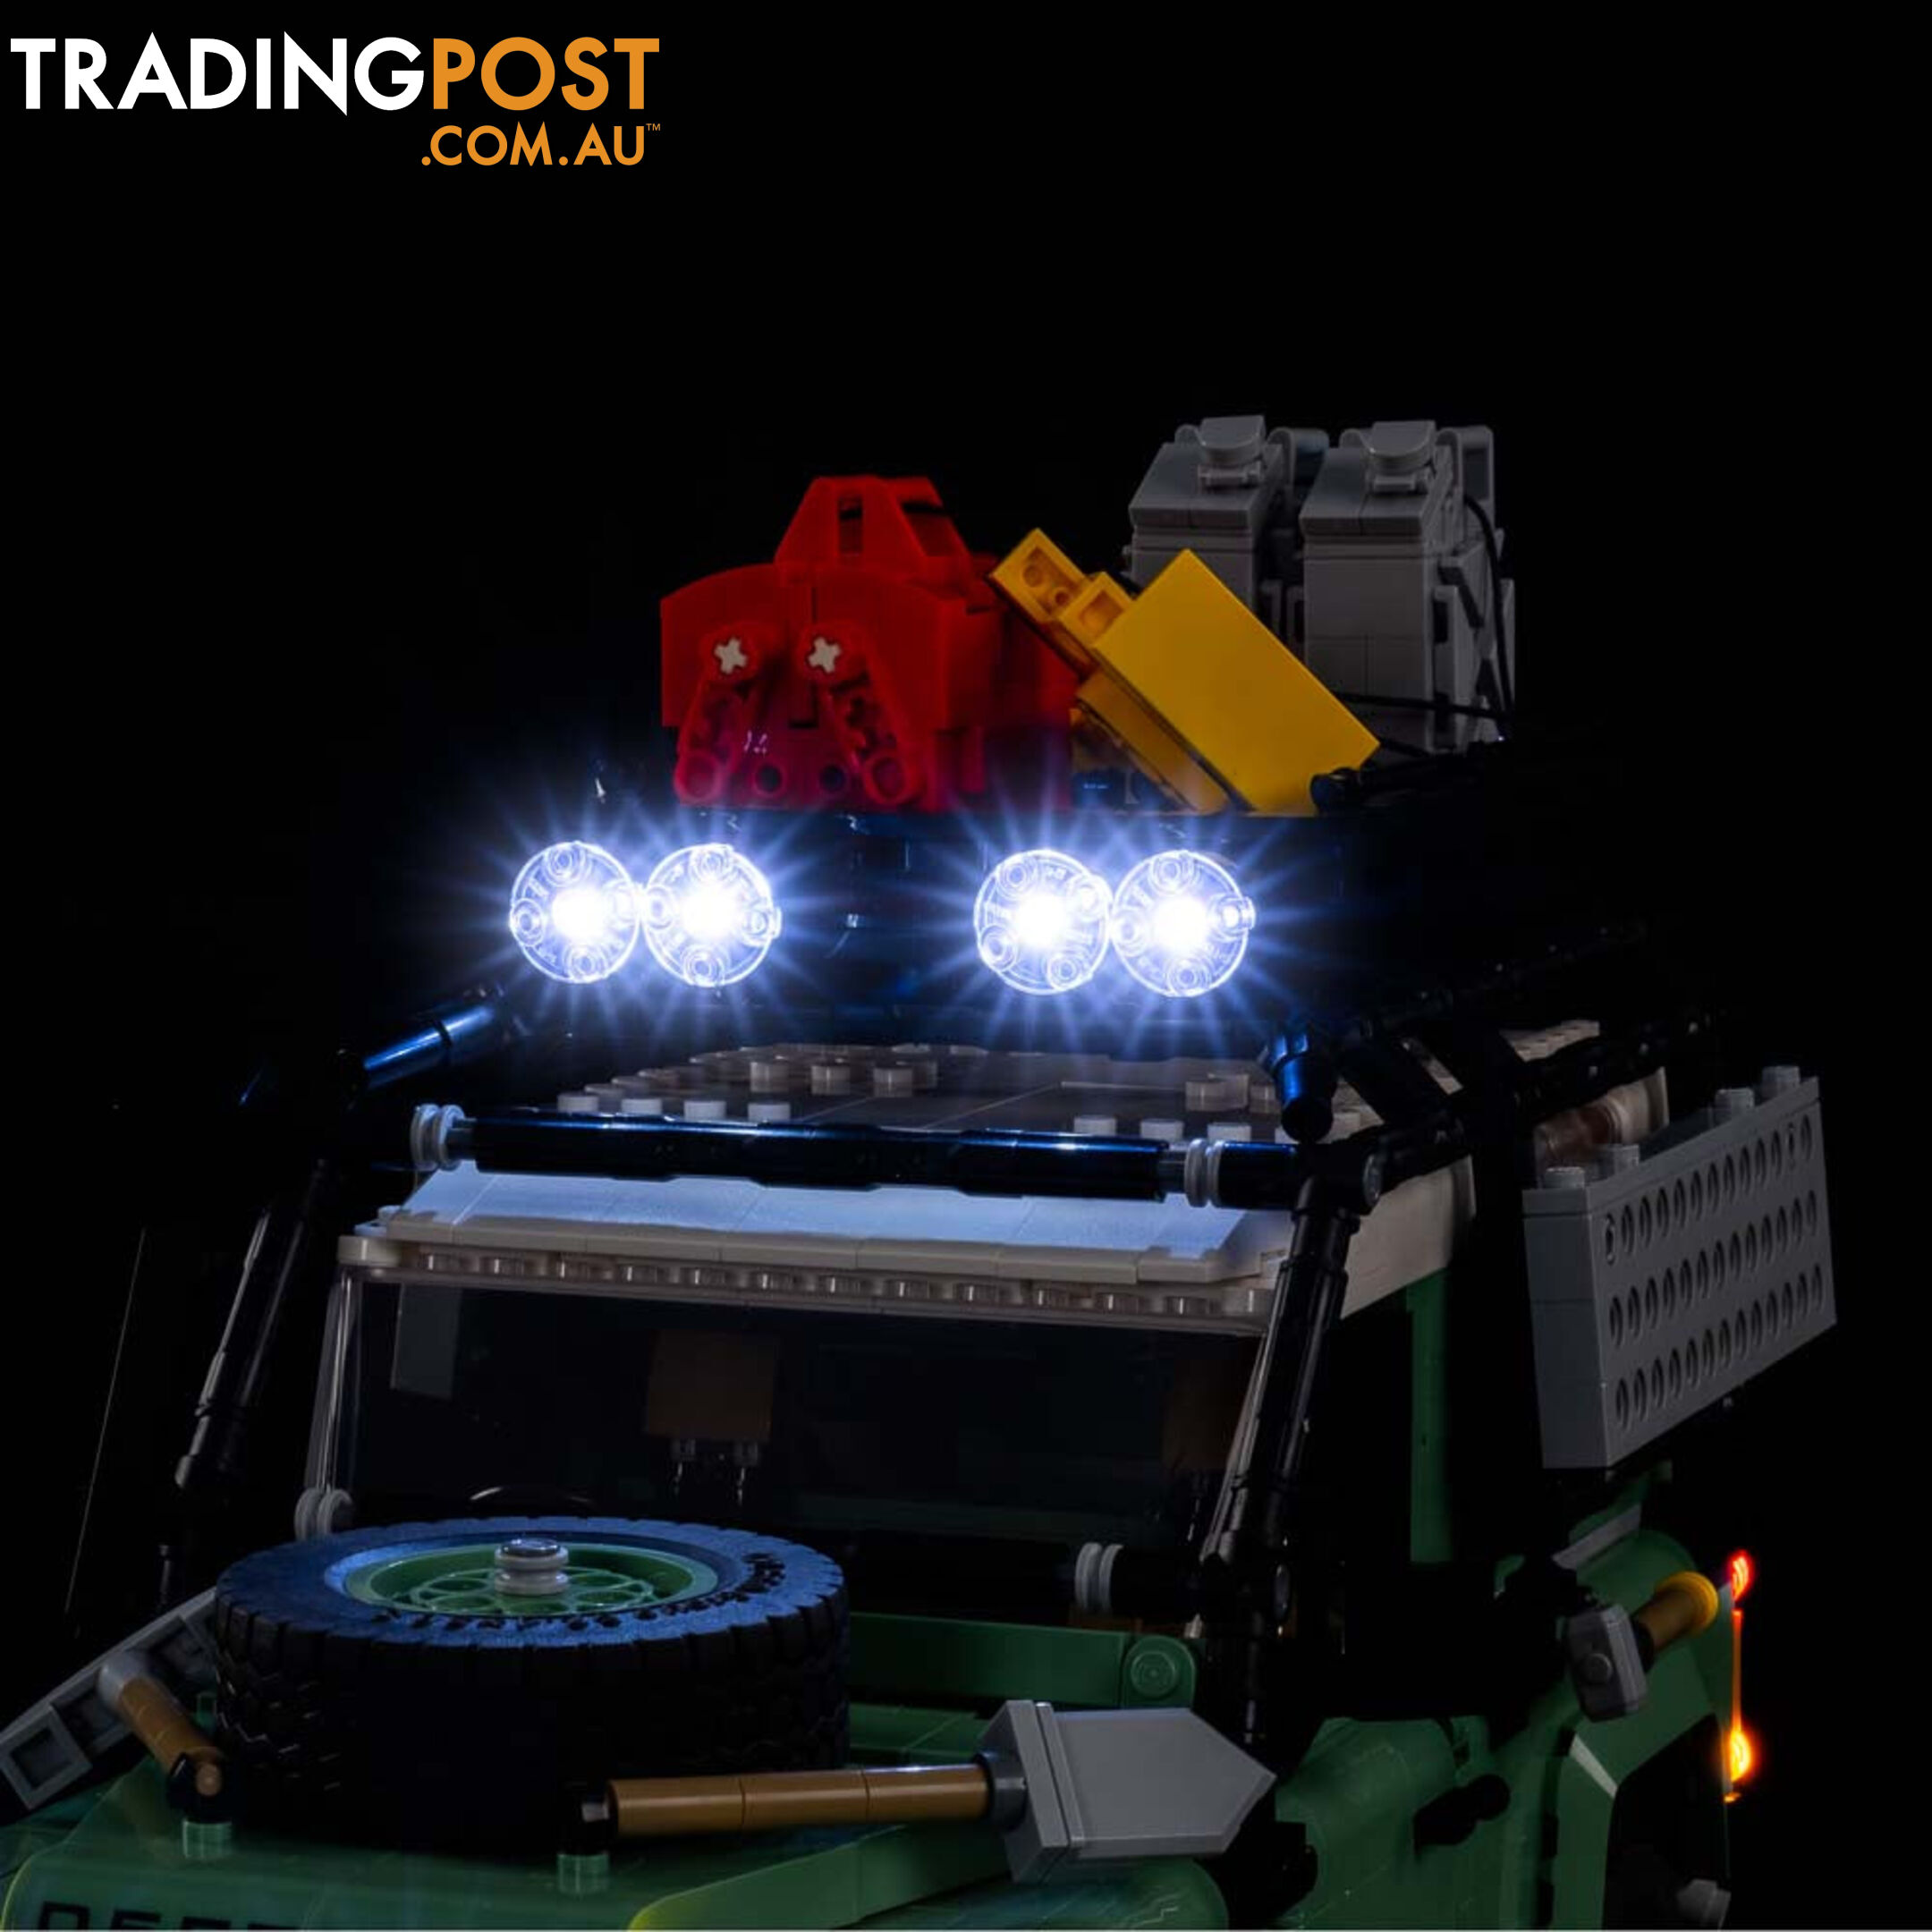 Light Kit For LEGO Land Rover Classic Defender 90 10317 - Light My Bricks - Lb72668409506 - 726684095063